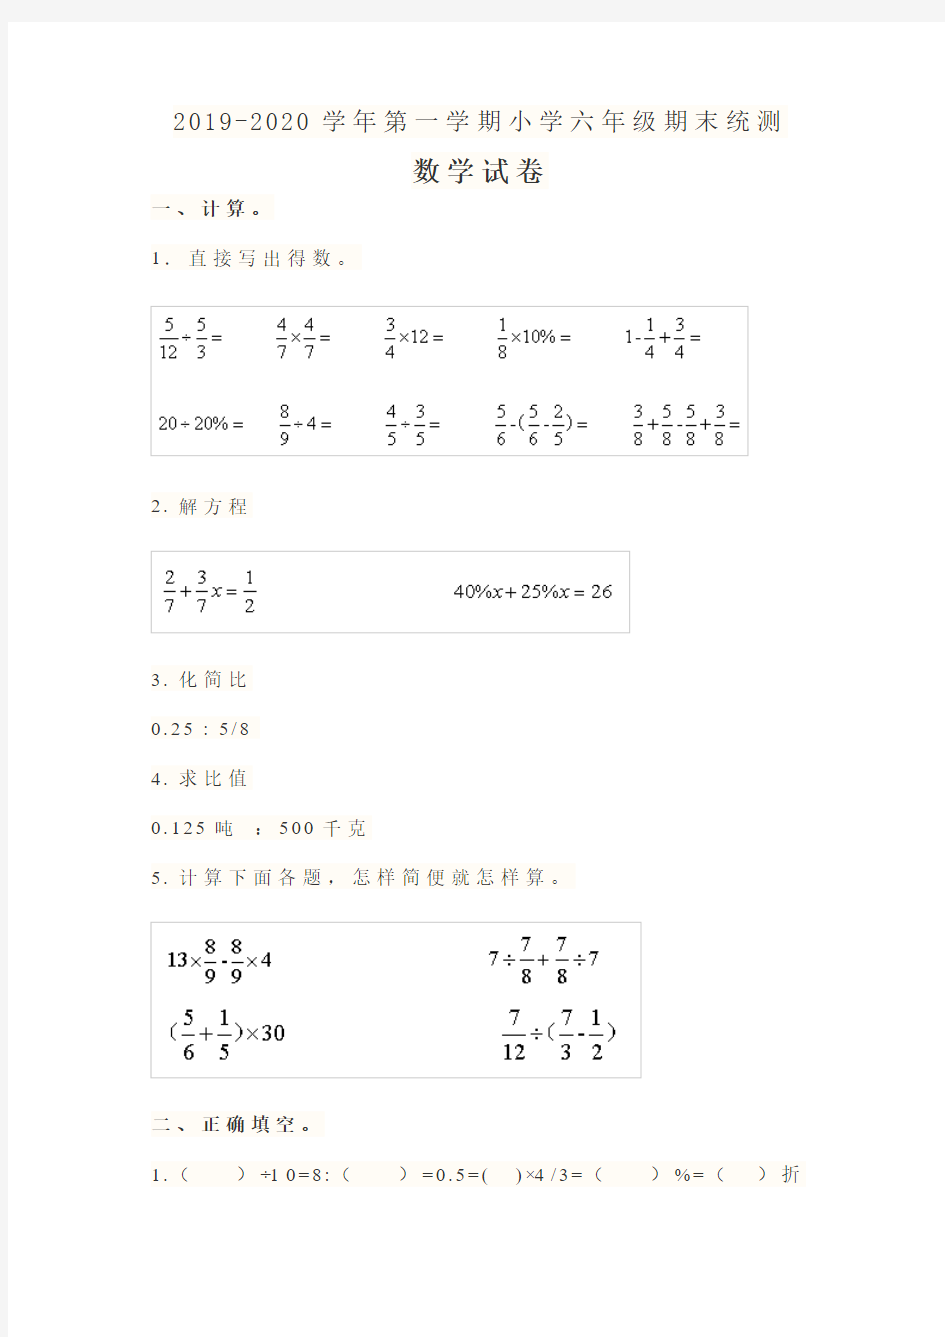 苏教版(扬州市)2019-2020学年第一学期小学六年级期末统测数学试卷